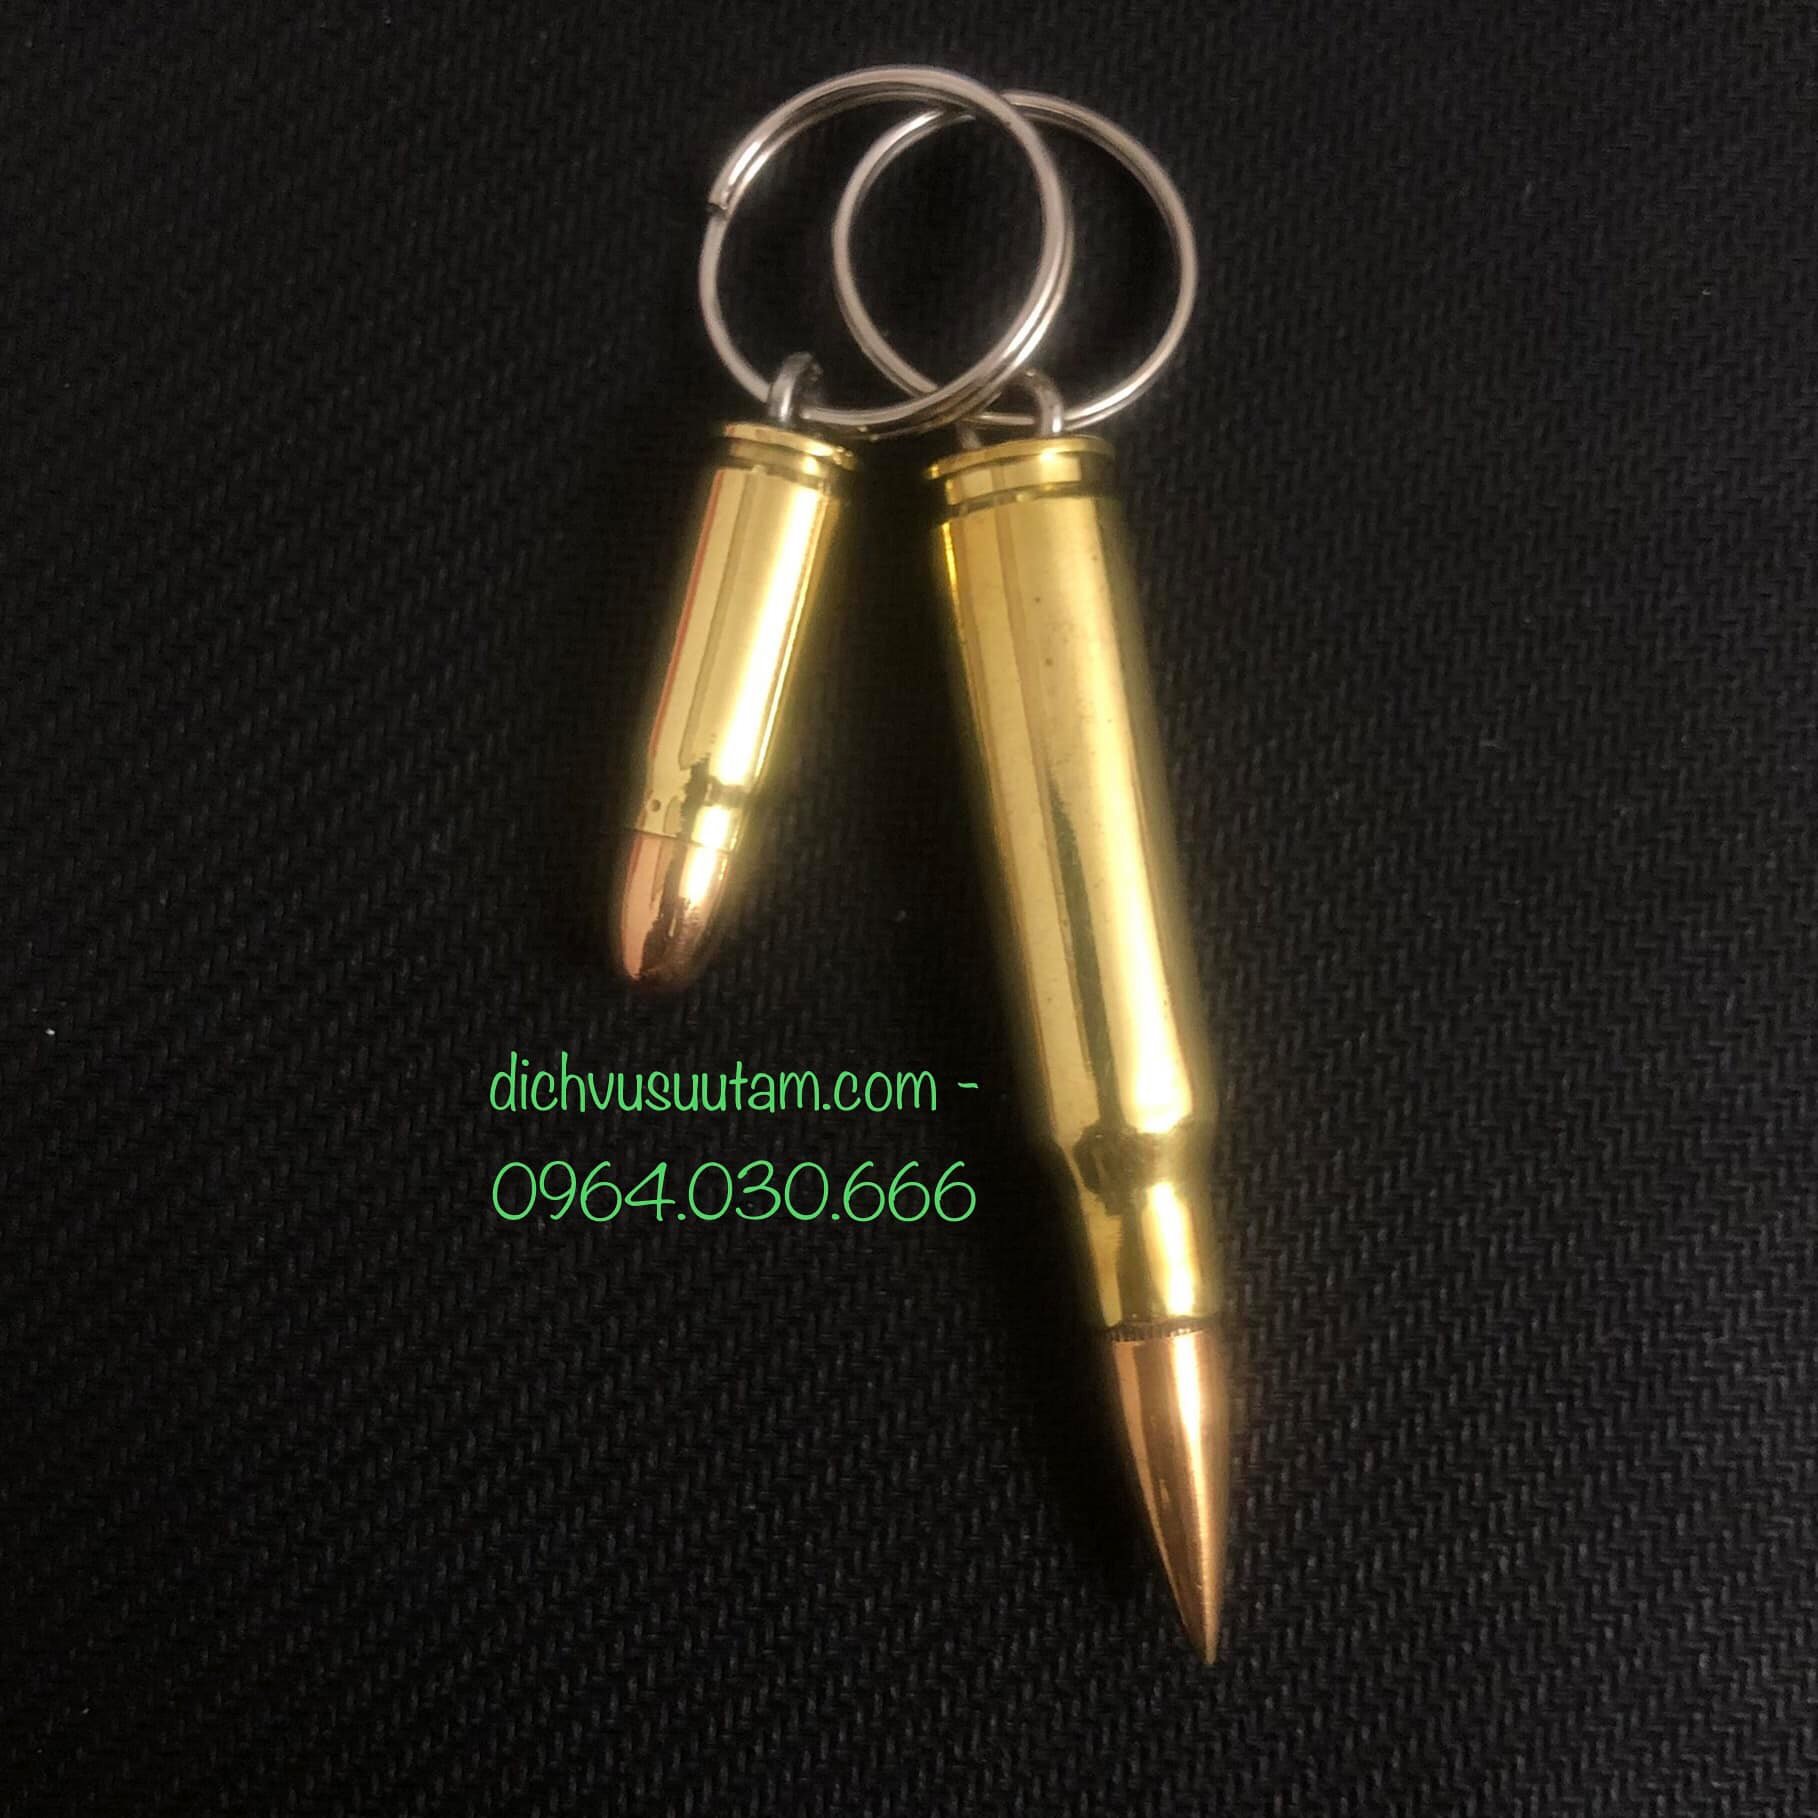 Bộ 2 chiếc móc chìa khóa vỏ đạn cỡ nhỏ đầu tròn và vỏ đạn cỡ lớn